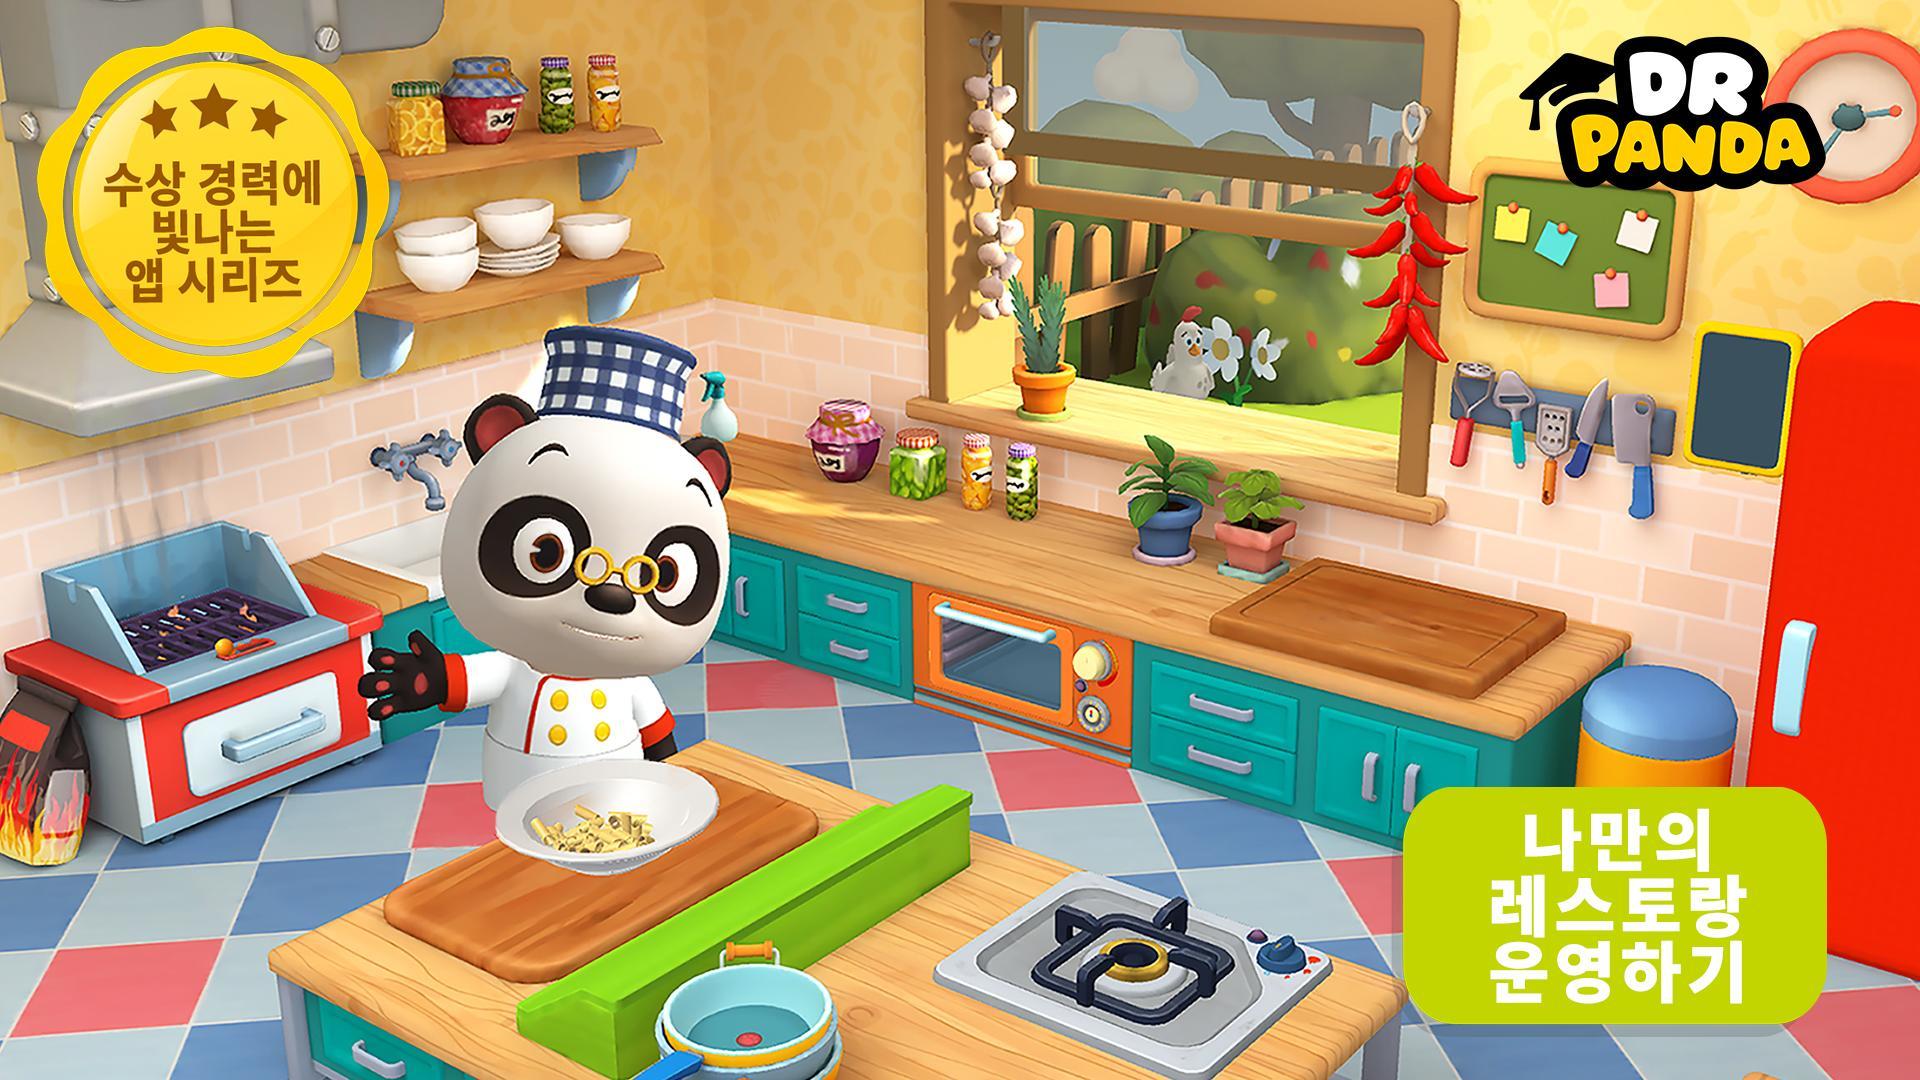 Screenshot 1 of Dr. Panda 레스토랑 3 21.2.75